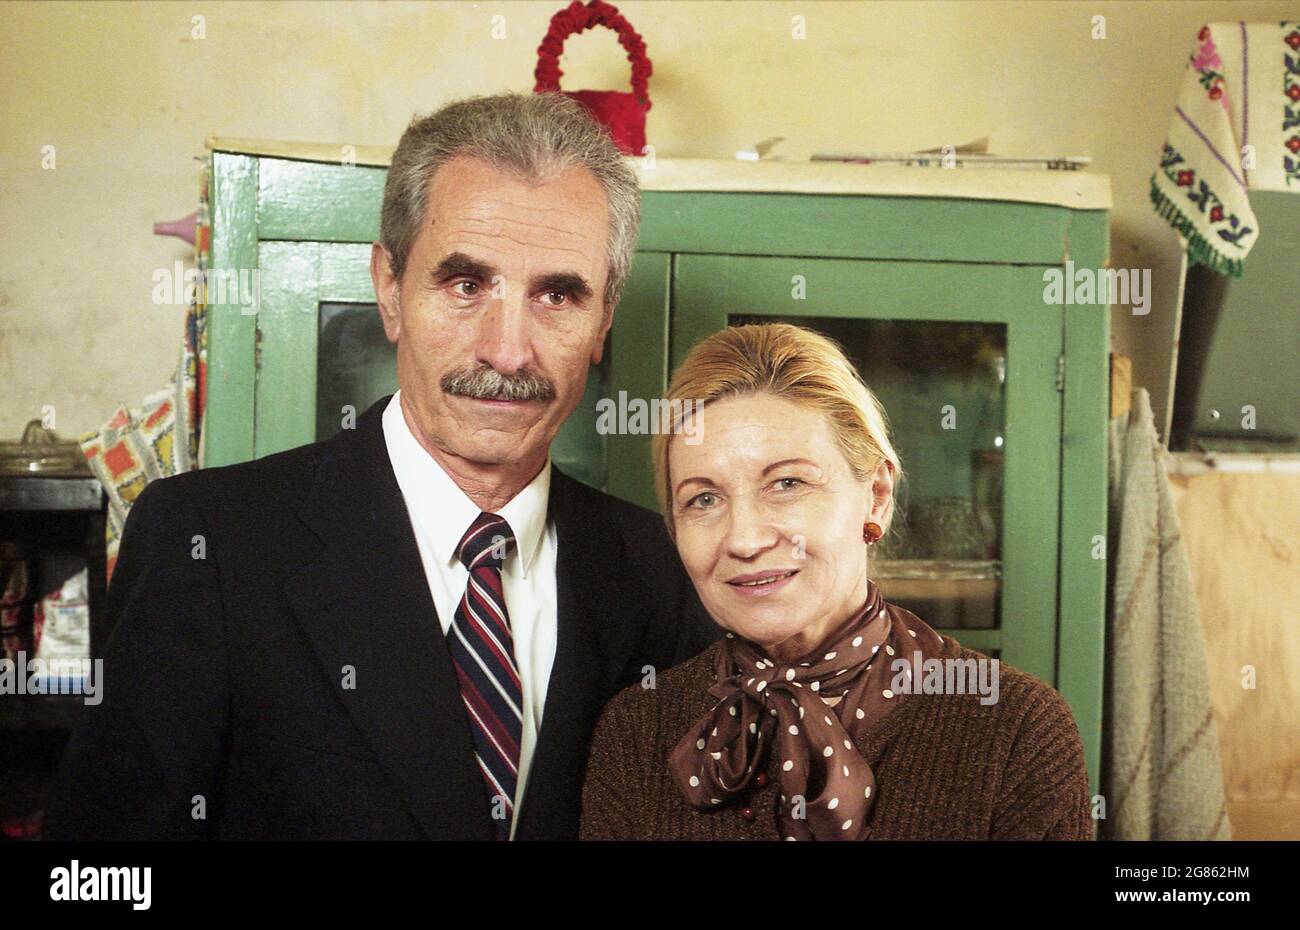 Romania, 2001. Attori Remus Mărgineanu & Lucia Mureșan durante la ripresa del film 'rapporto sullo stato della nazione' (regista Ioan Carmazan). Foto Stock